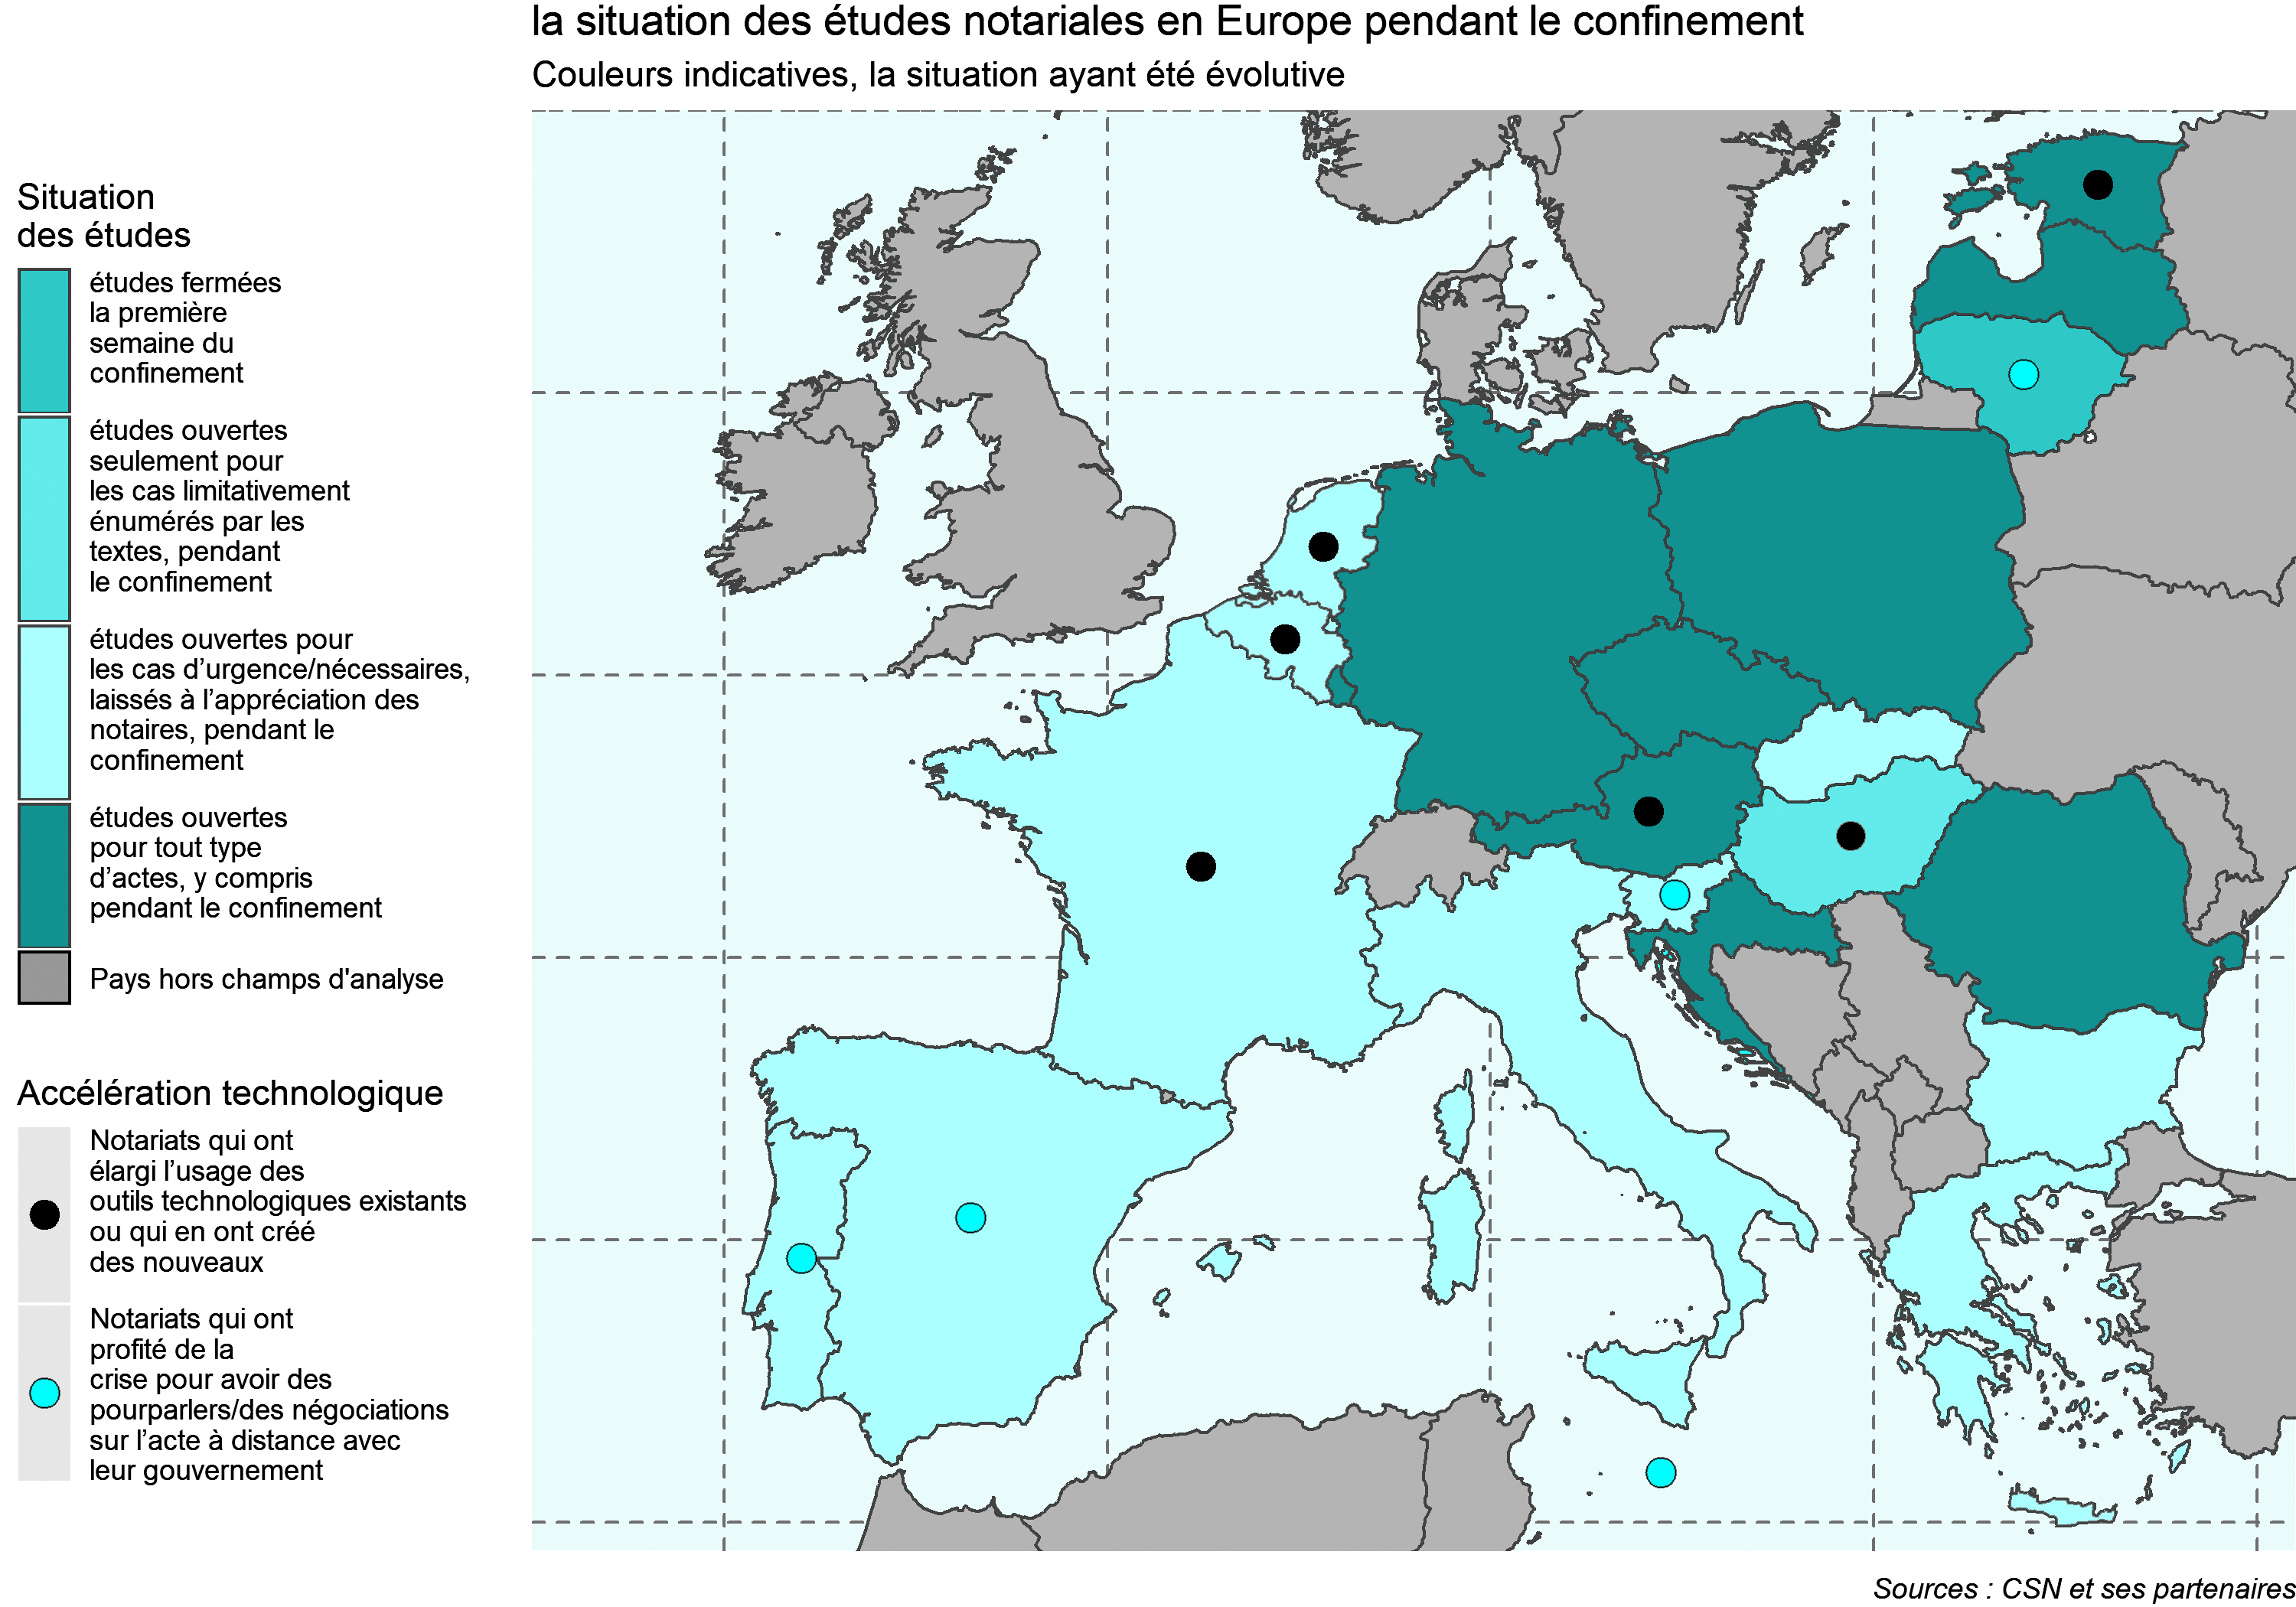 Situation des études notariales en Europe pendant le confinement